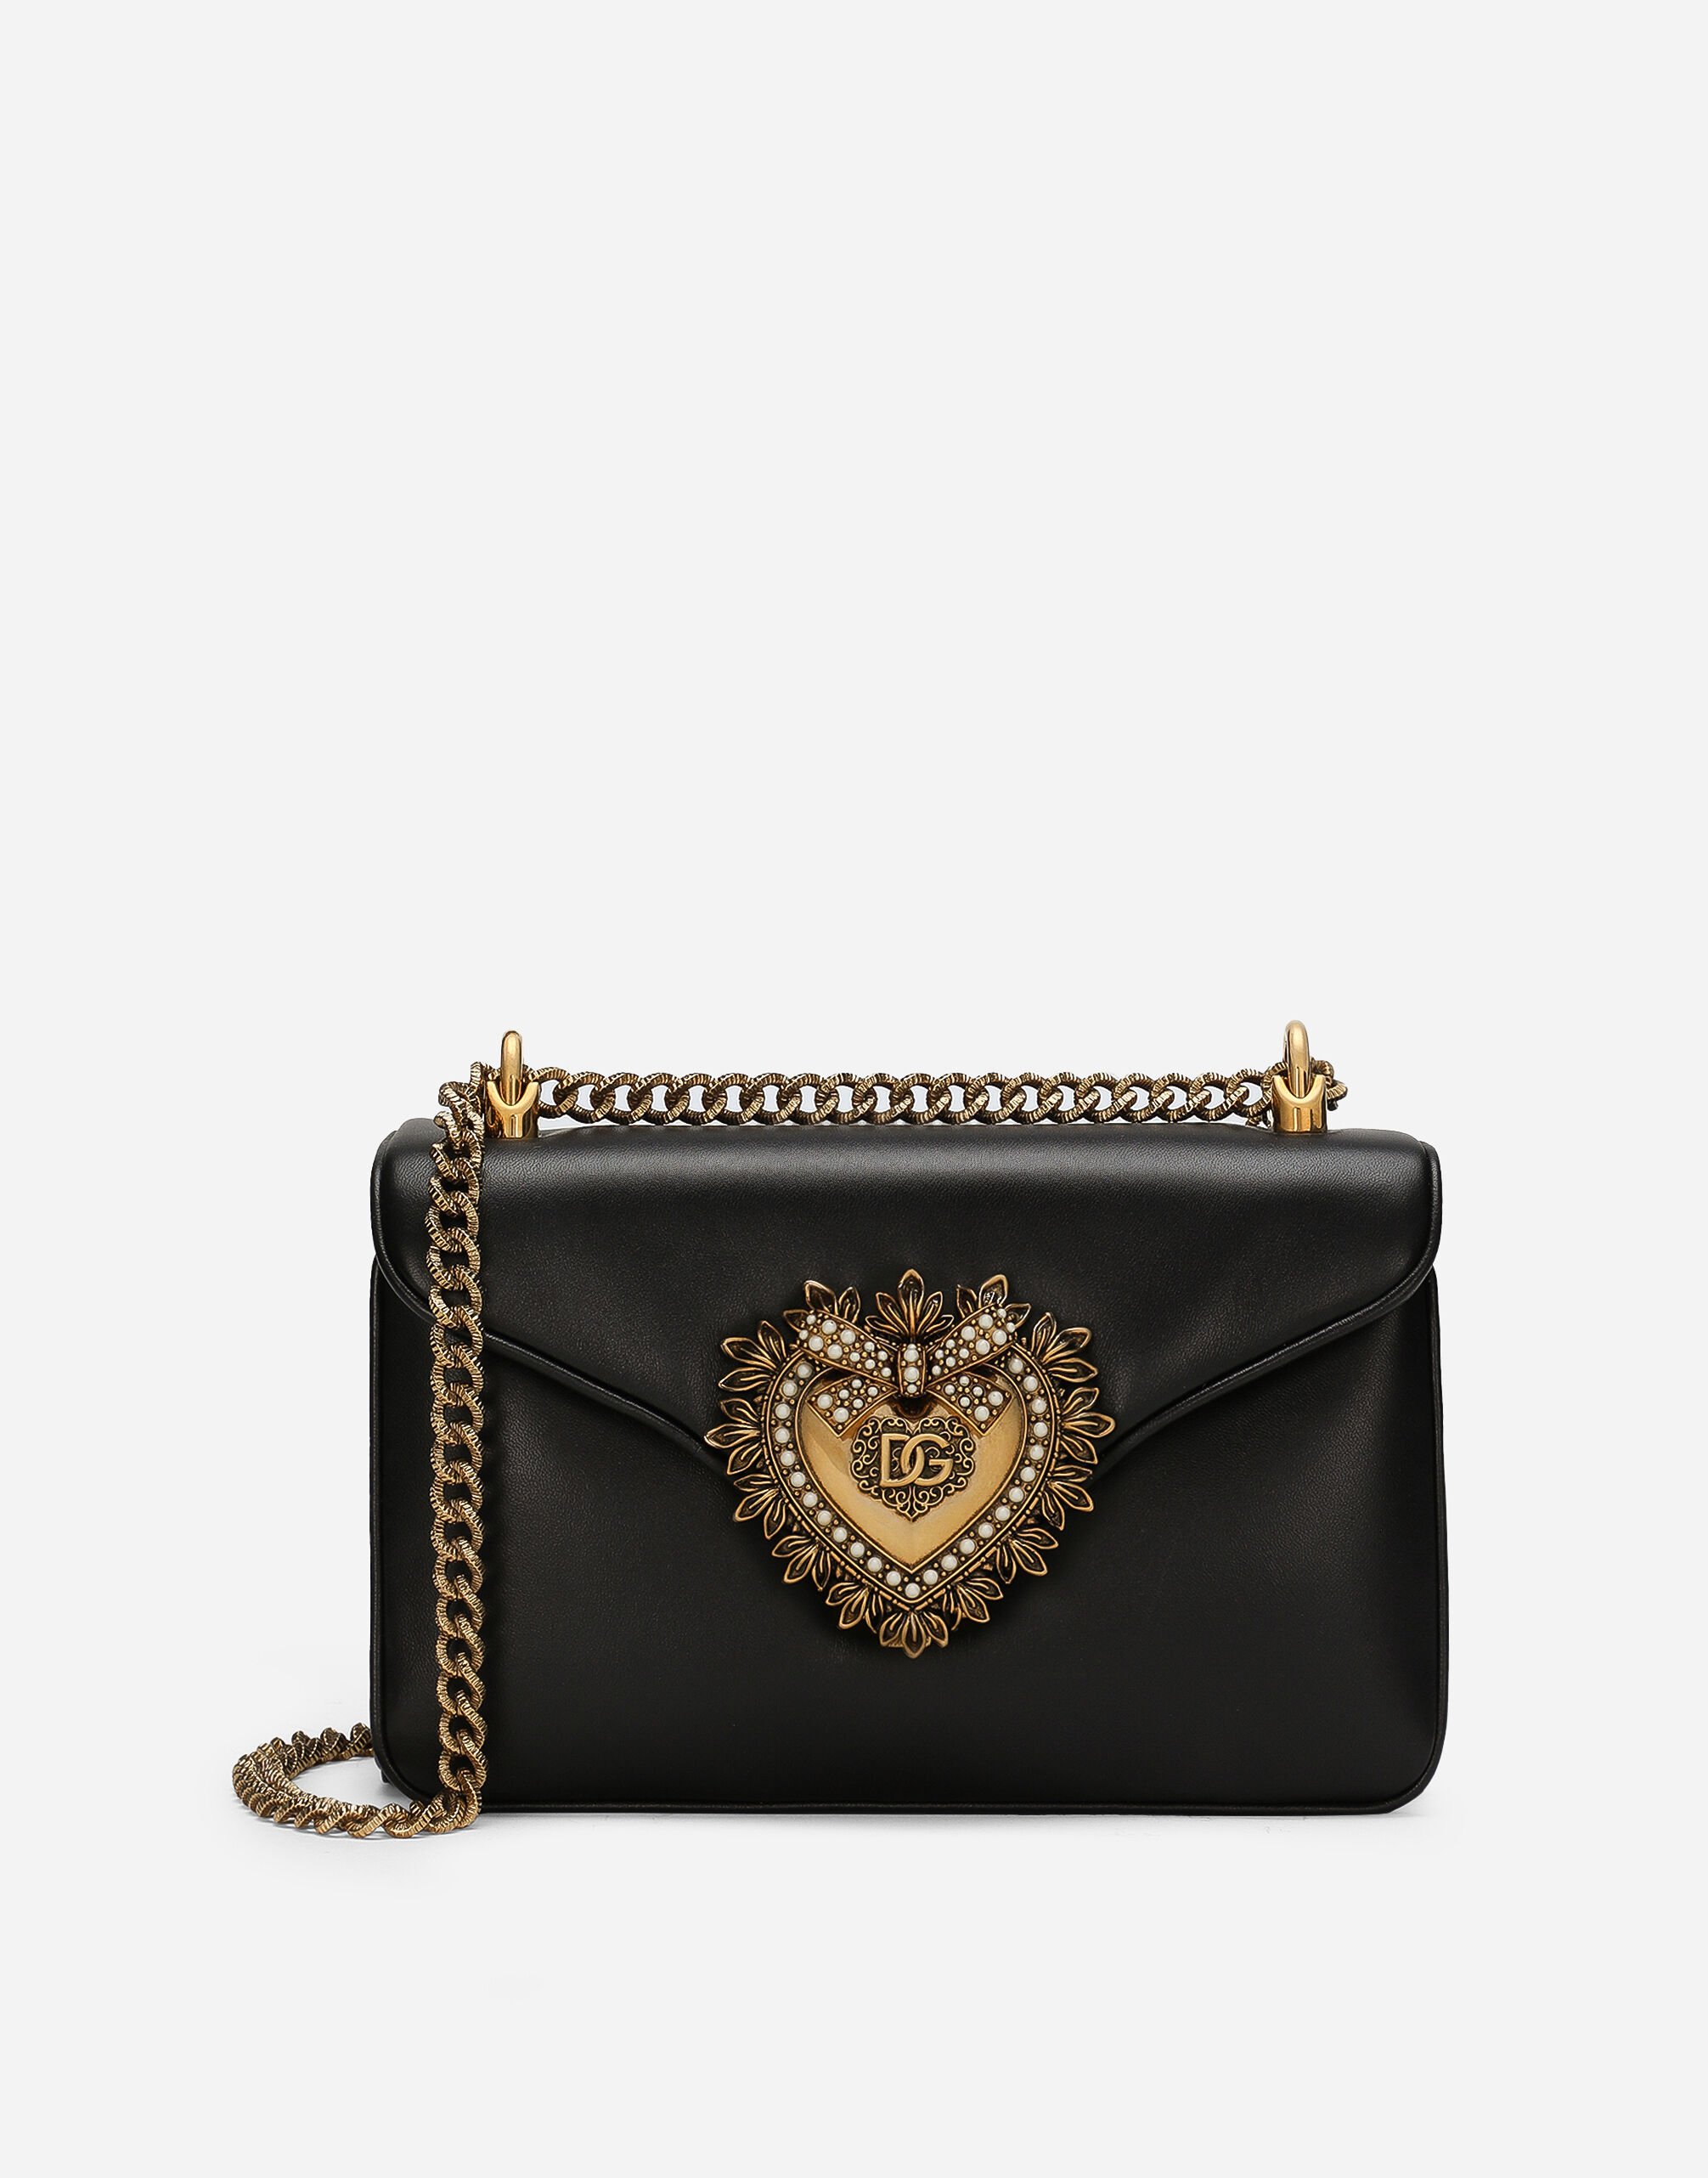 Dolce & Gabbana Devotion shoulder bag Black BB7100AW437